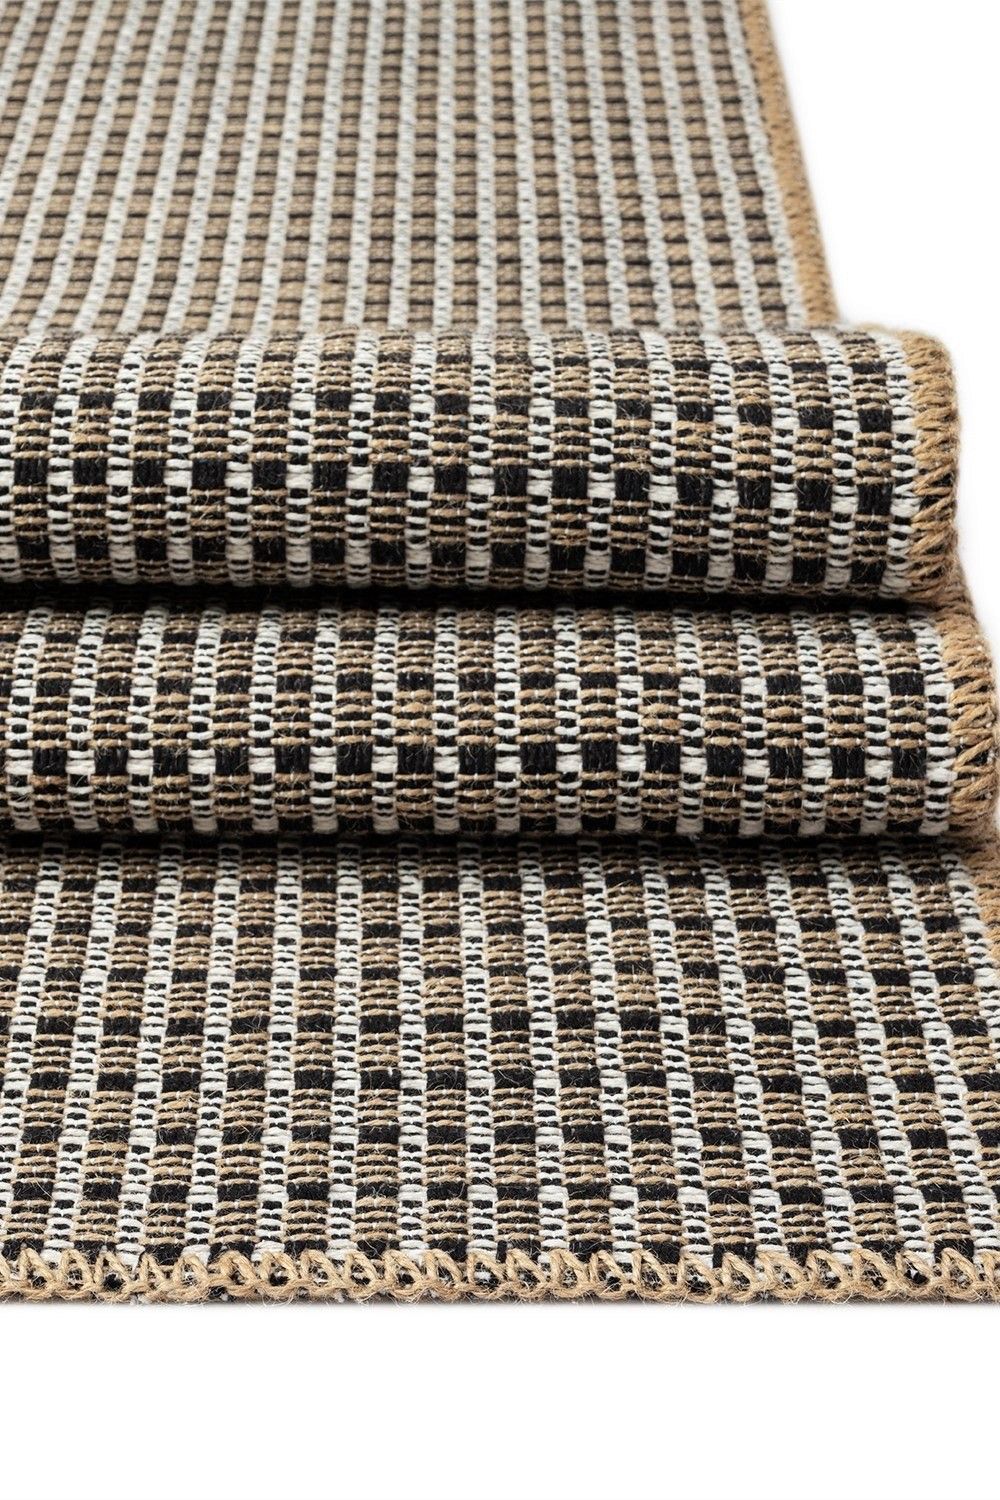 Friolero 2576 - Carpet (160 x 230)